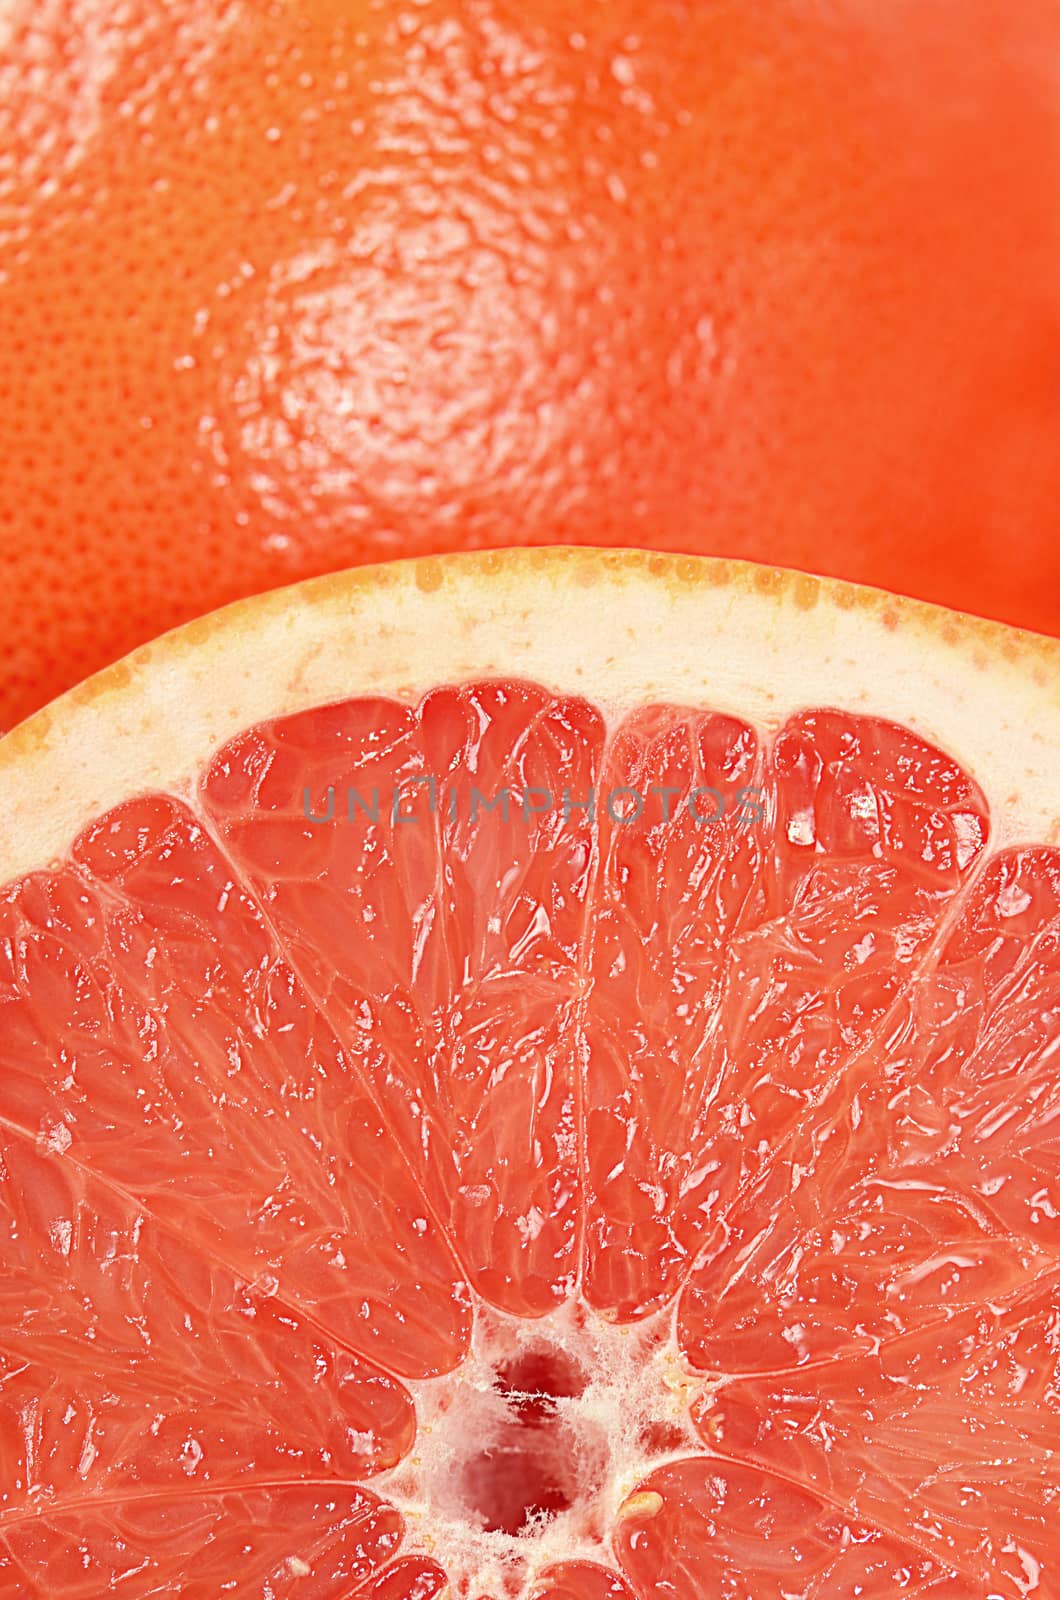 The fresh grapefruit as a background closeup